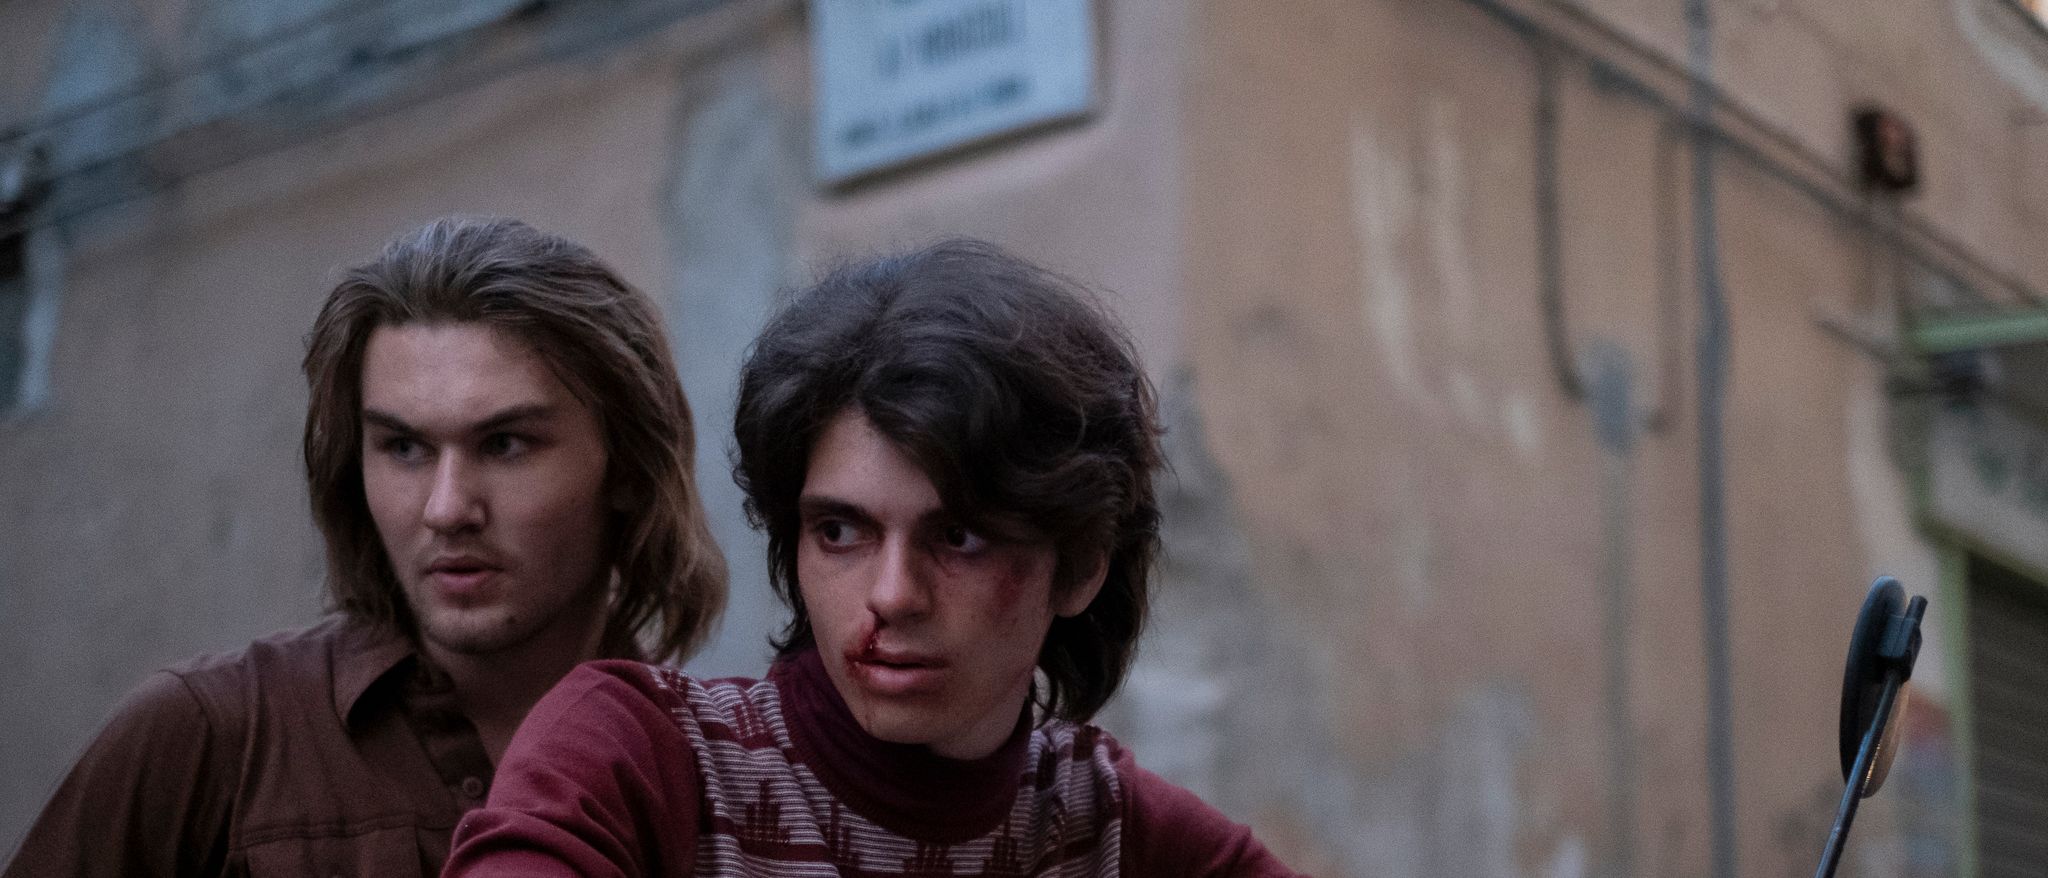 I «Nostalgia» møtes fortid og nåtid i Napolis skitne gater